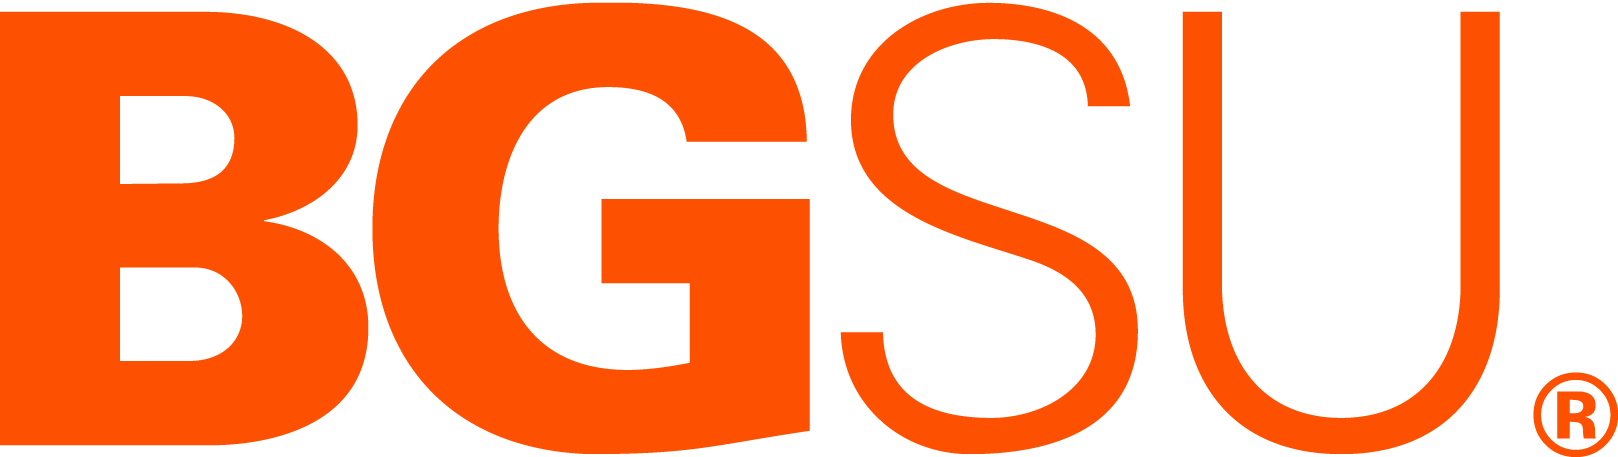 bgsu orange